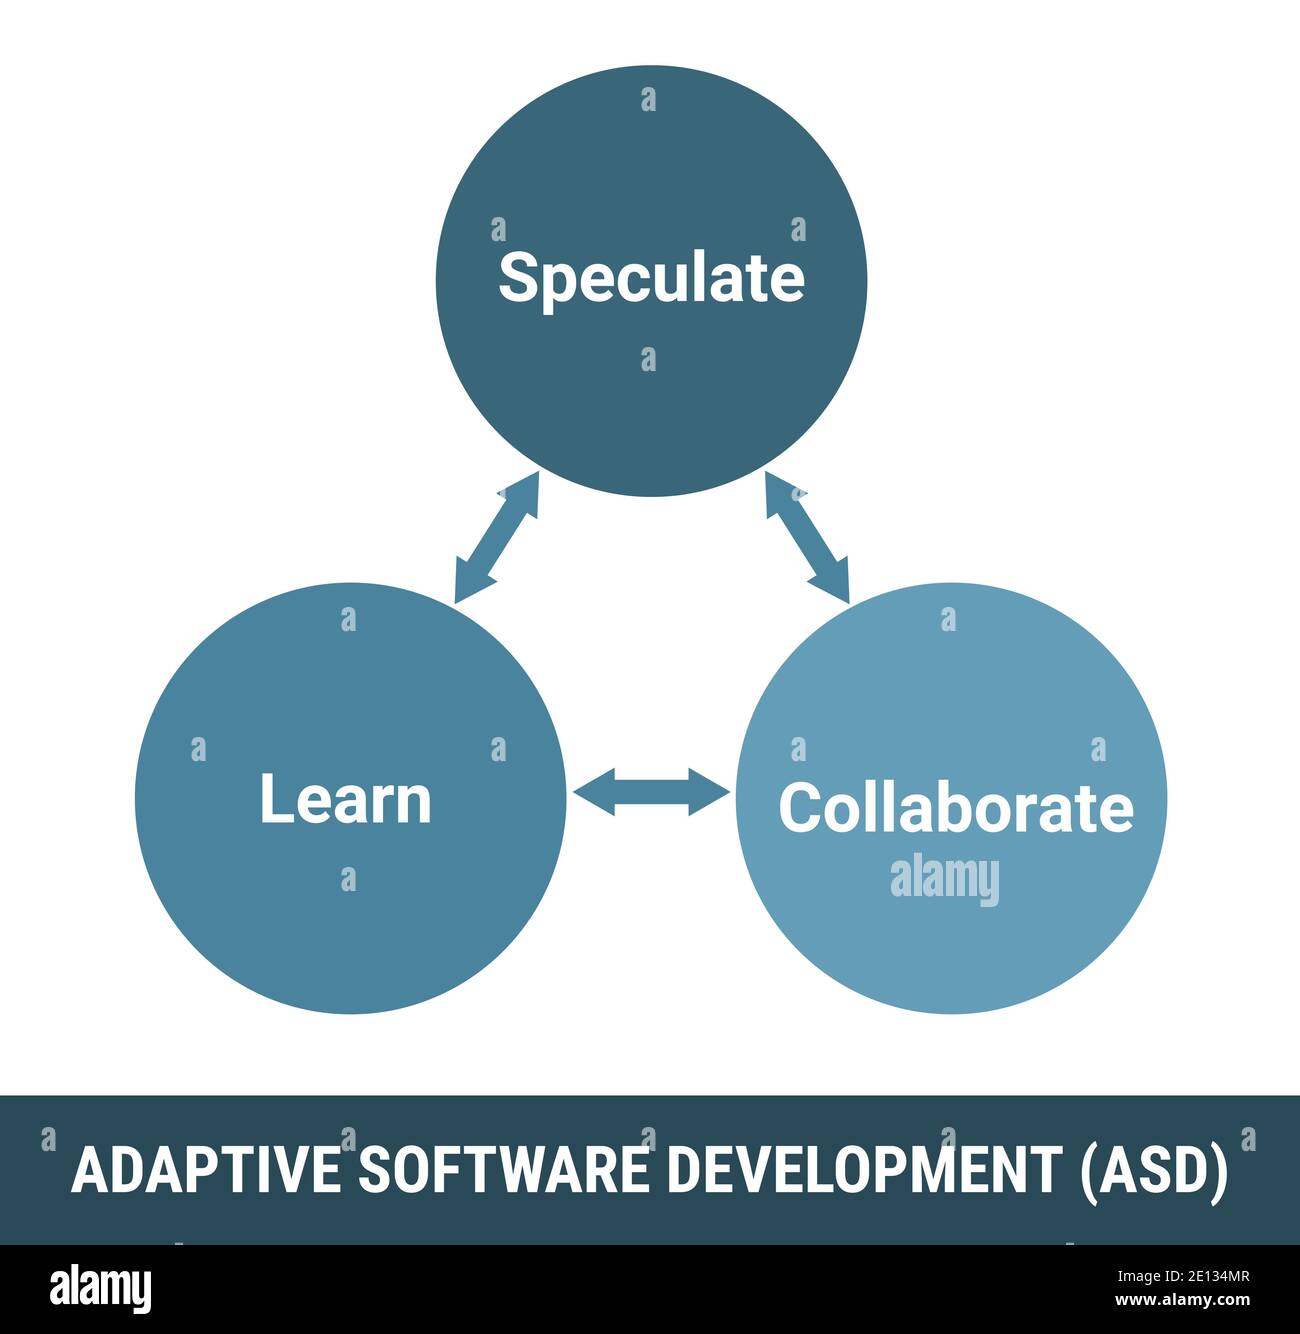 Adaptive Softwareentwicklung ASD-Methodik, Prozessvektorschema. Spekulieren, lernen und zusammenarbeiten Schleife Zyklus. Lizenzfreie Vektorgrafik Stock Vektor